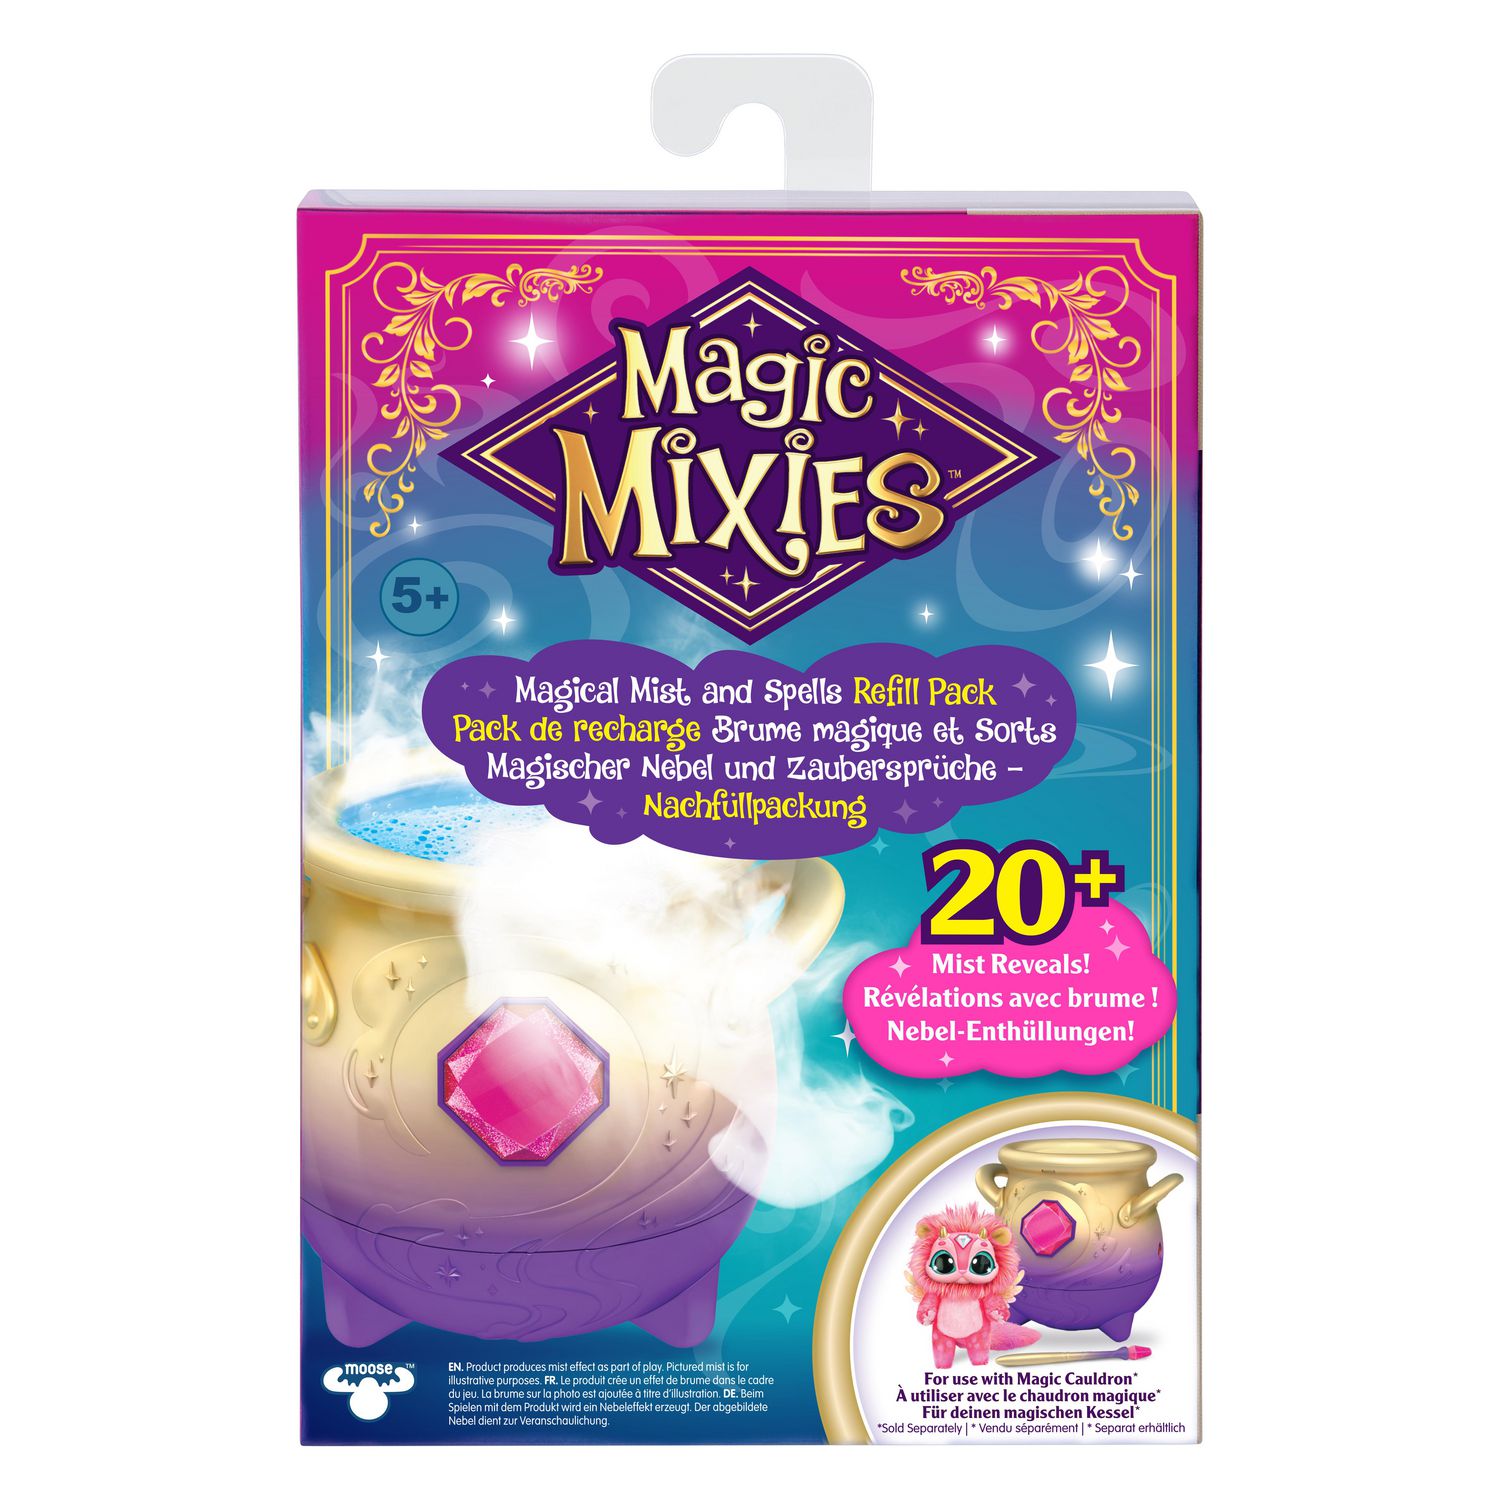 Magic Mixies- Pack de recharge de brume magique et de sorts pour